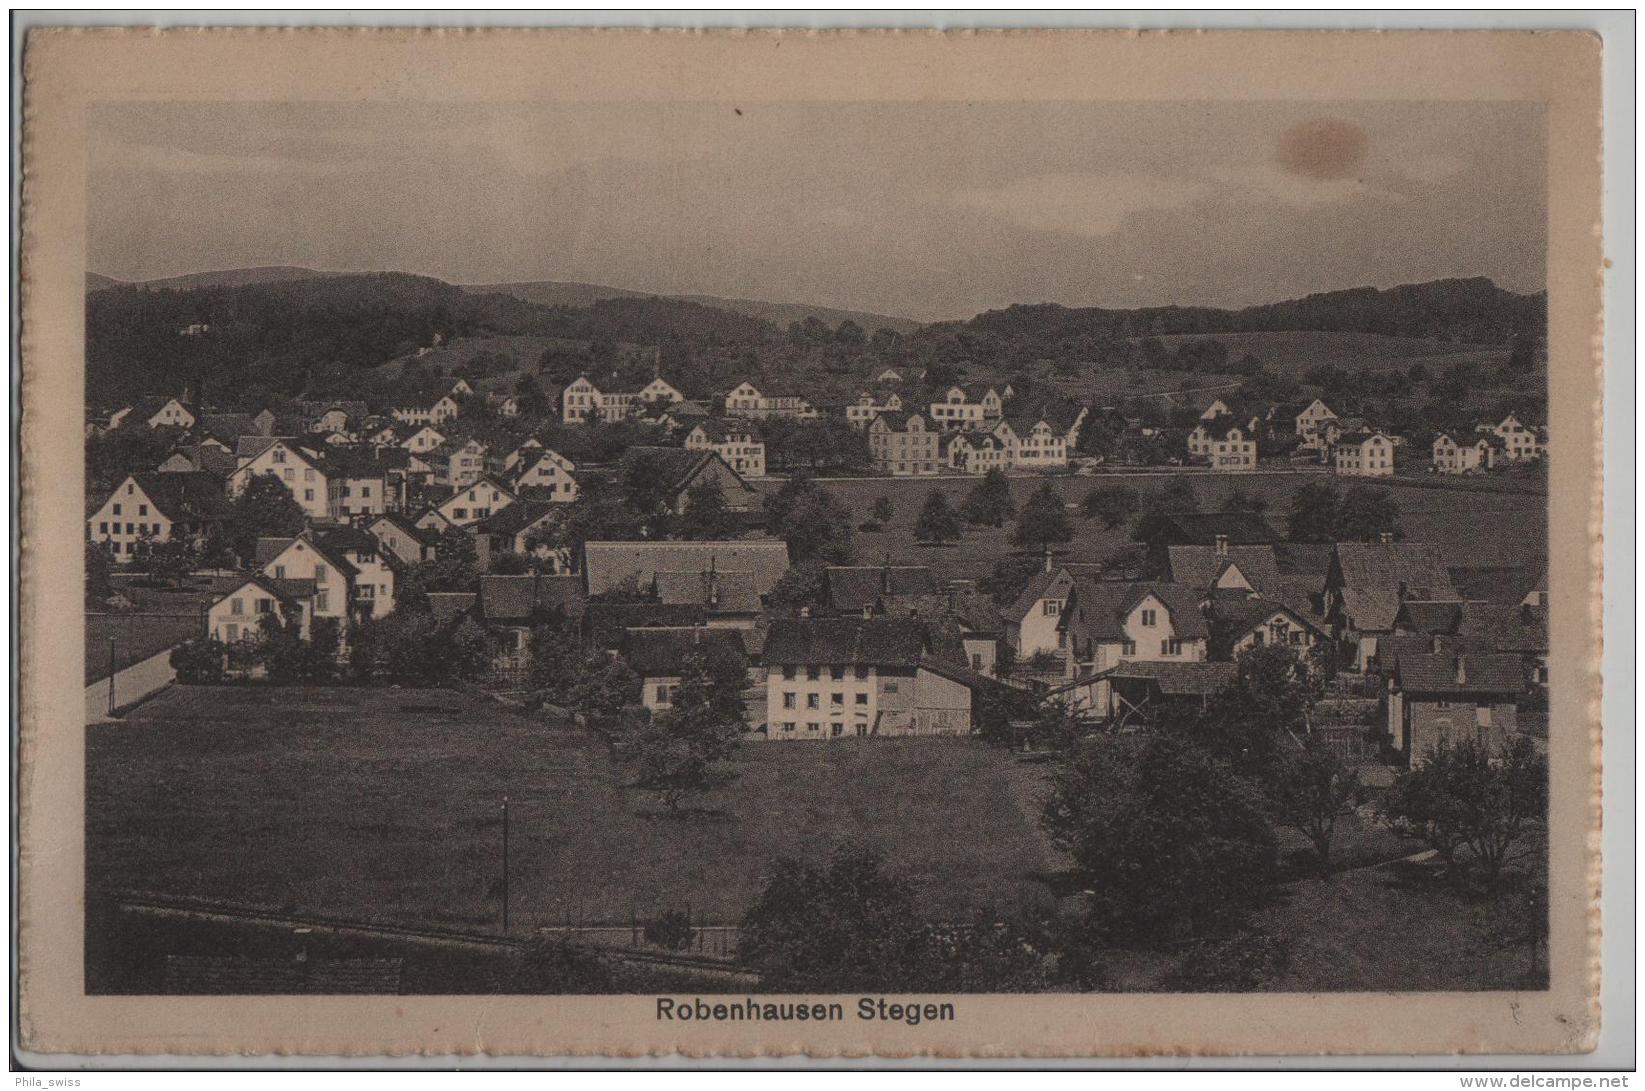 Robenhausen Stegen - Photoglob No. 05183 - Hausen Am Albis 